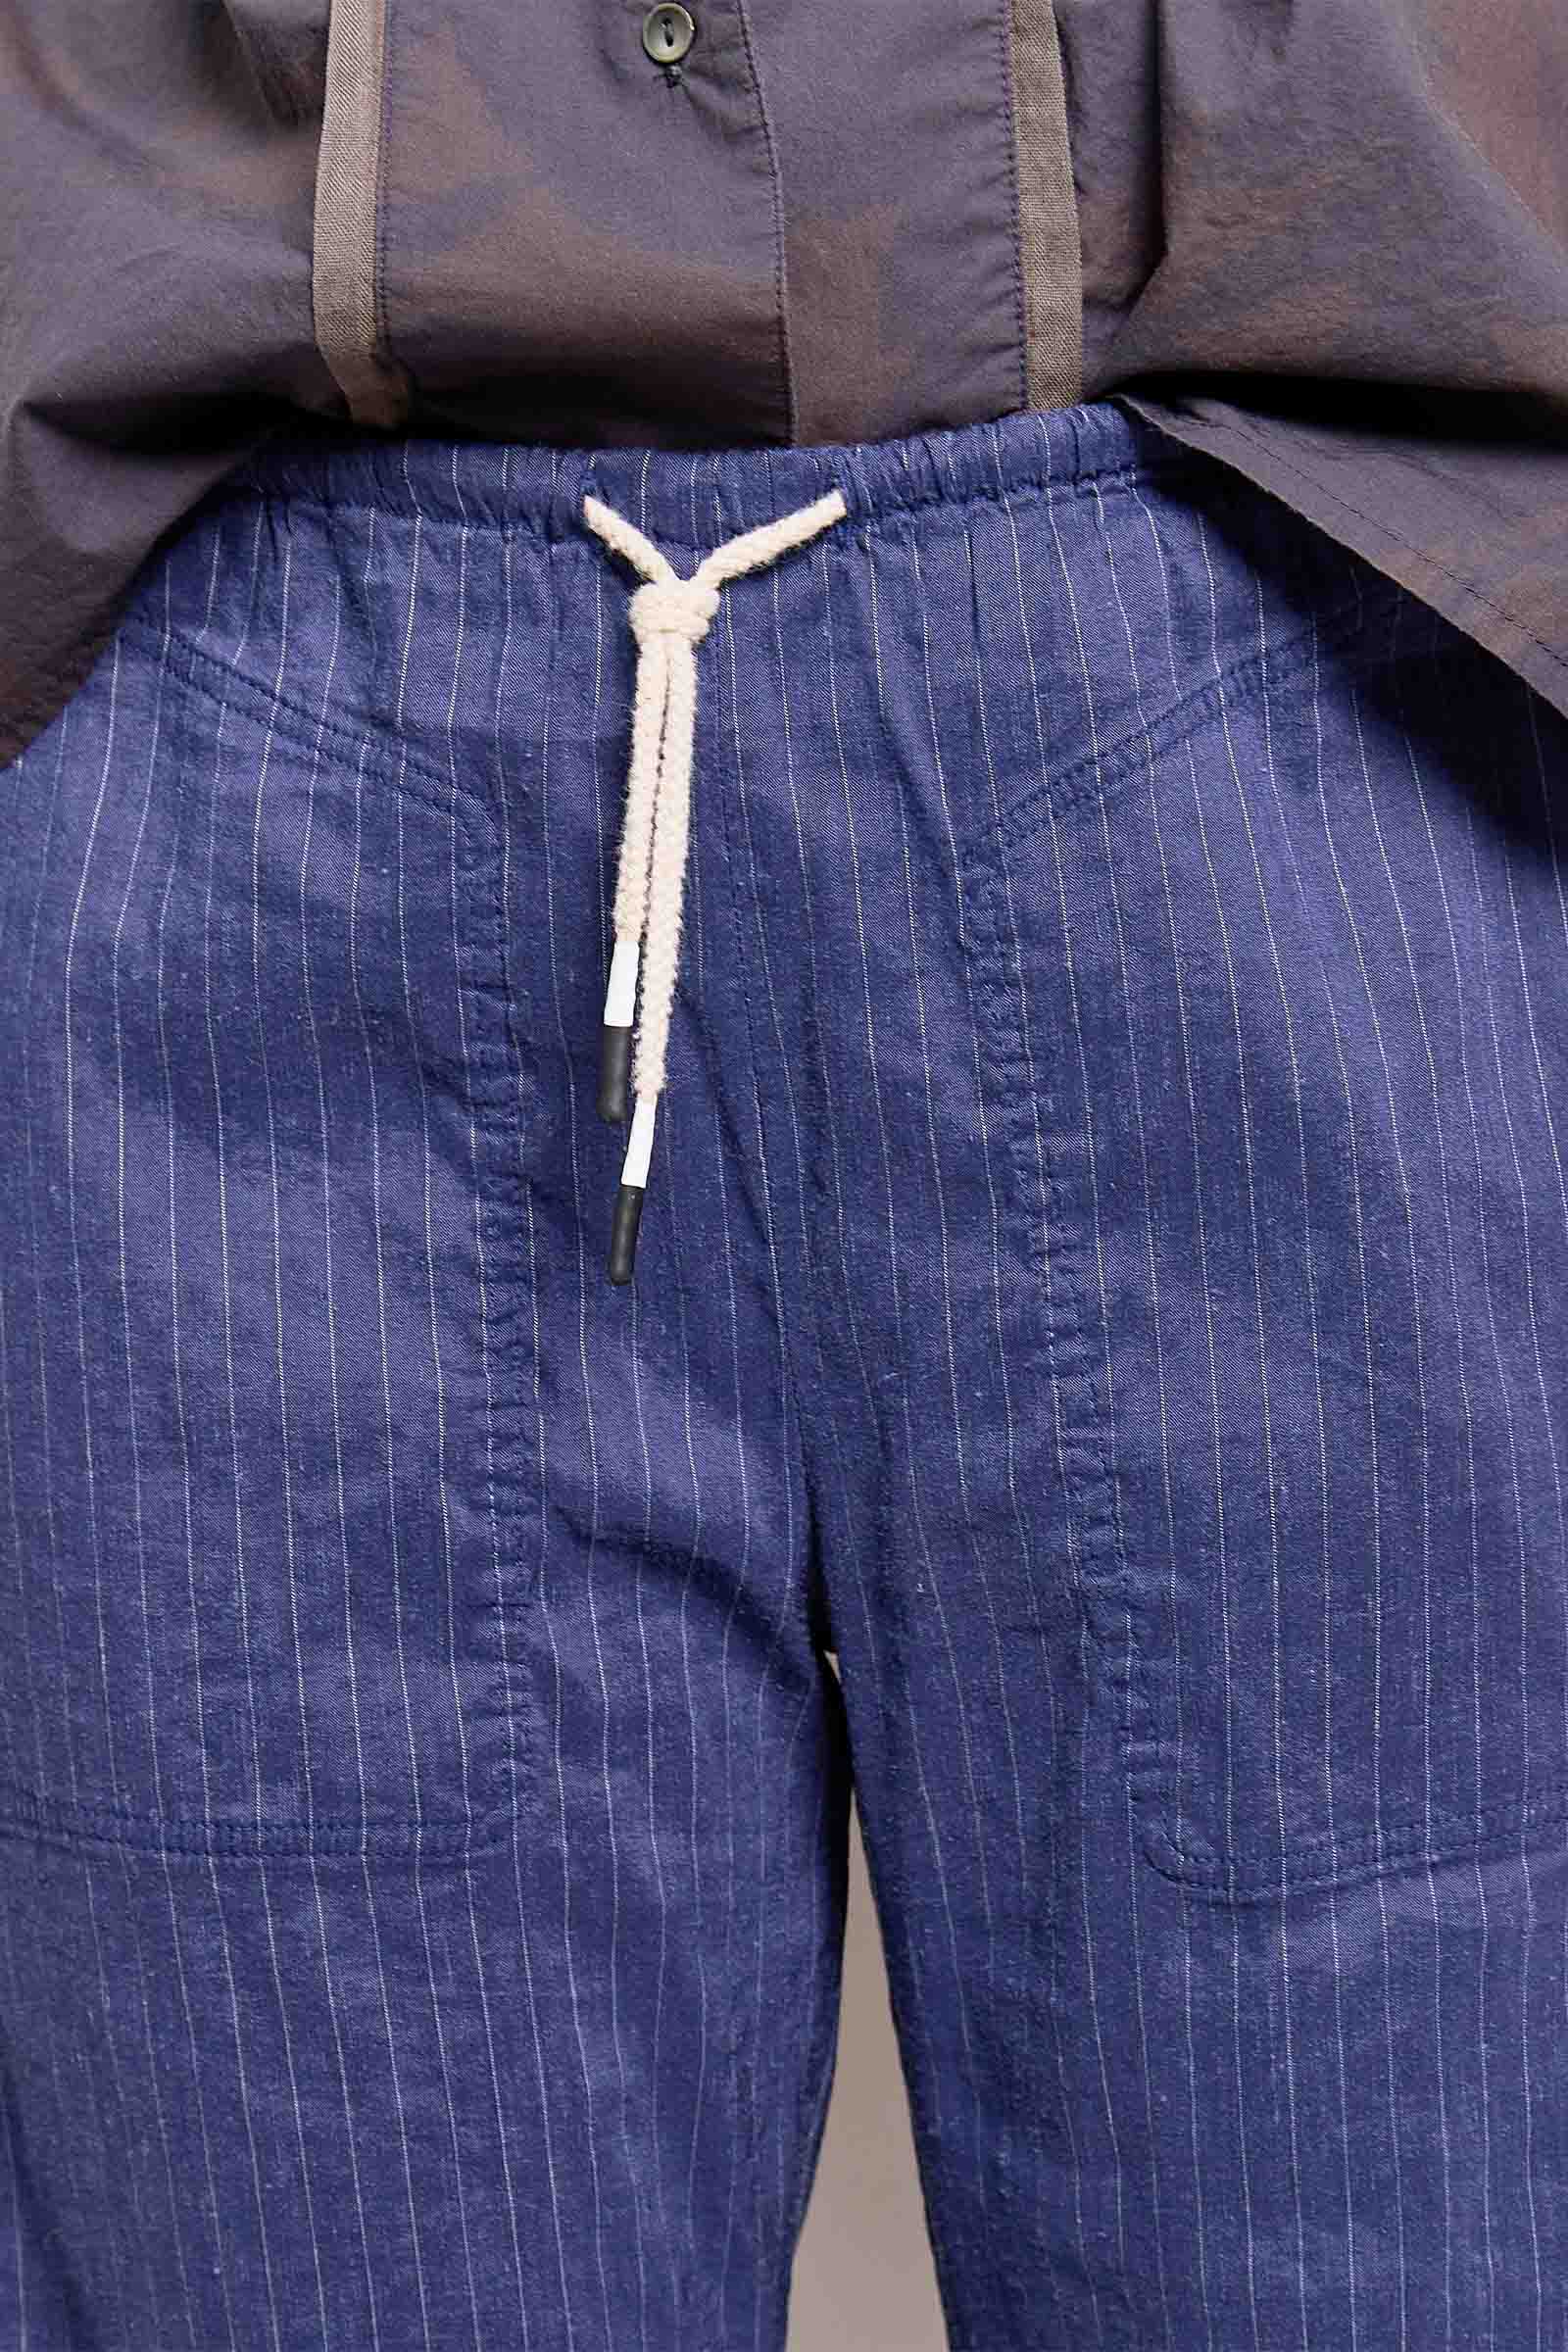 honest lightweight linen pant.